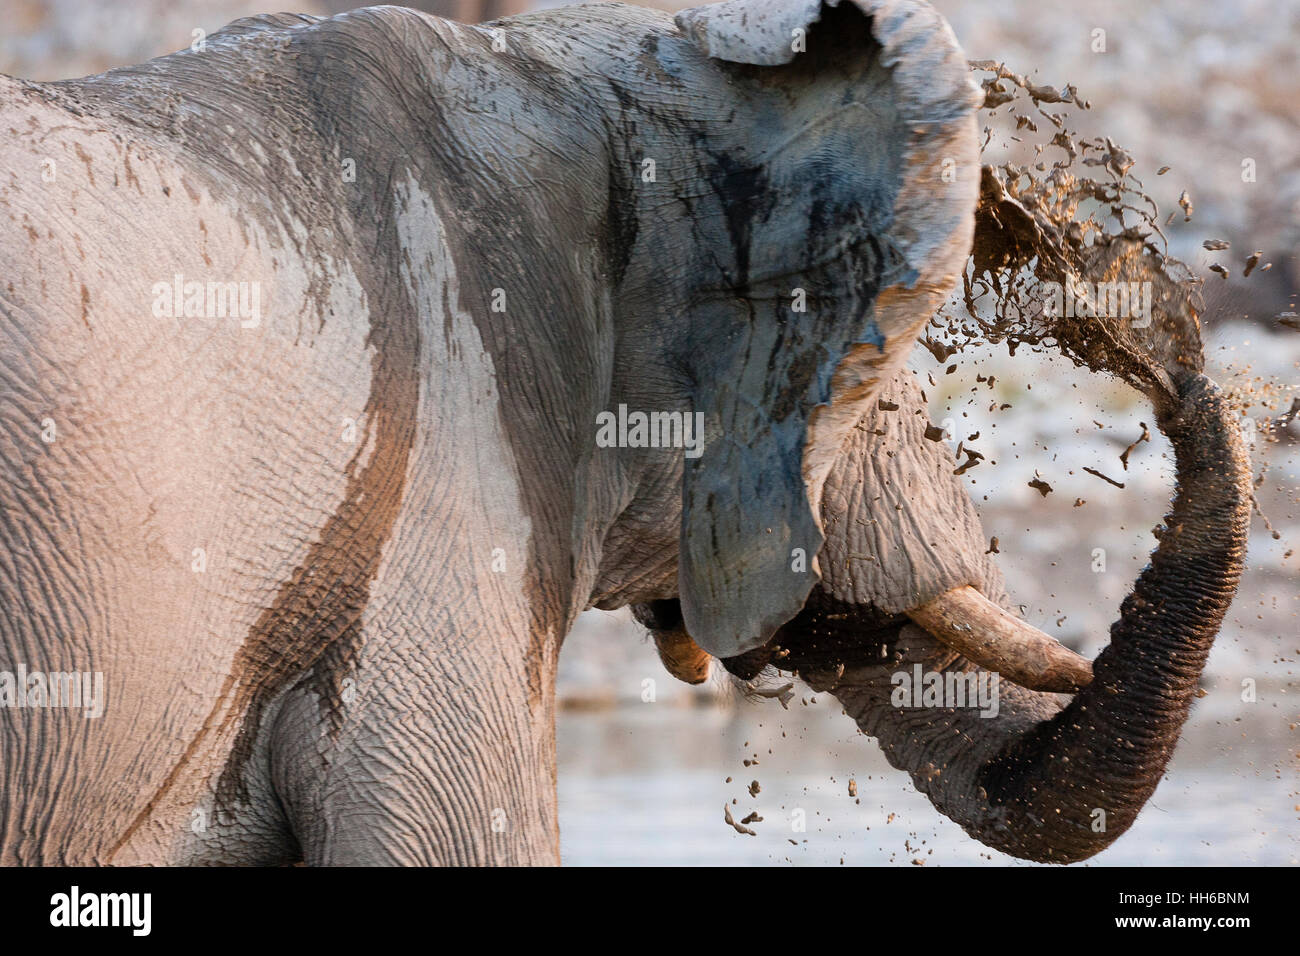 El Parque Nacional Etosha, en Namibia. Un elefante macho (loxodonta africana) se enfría con un baño de barro. Foto de stock